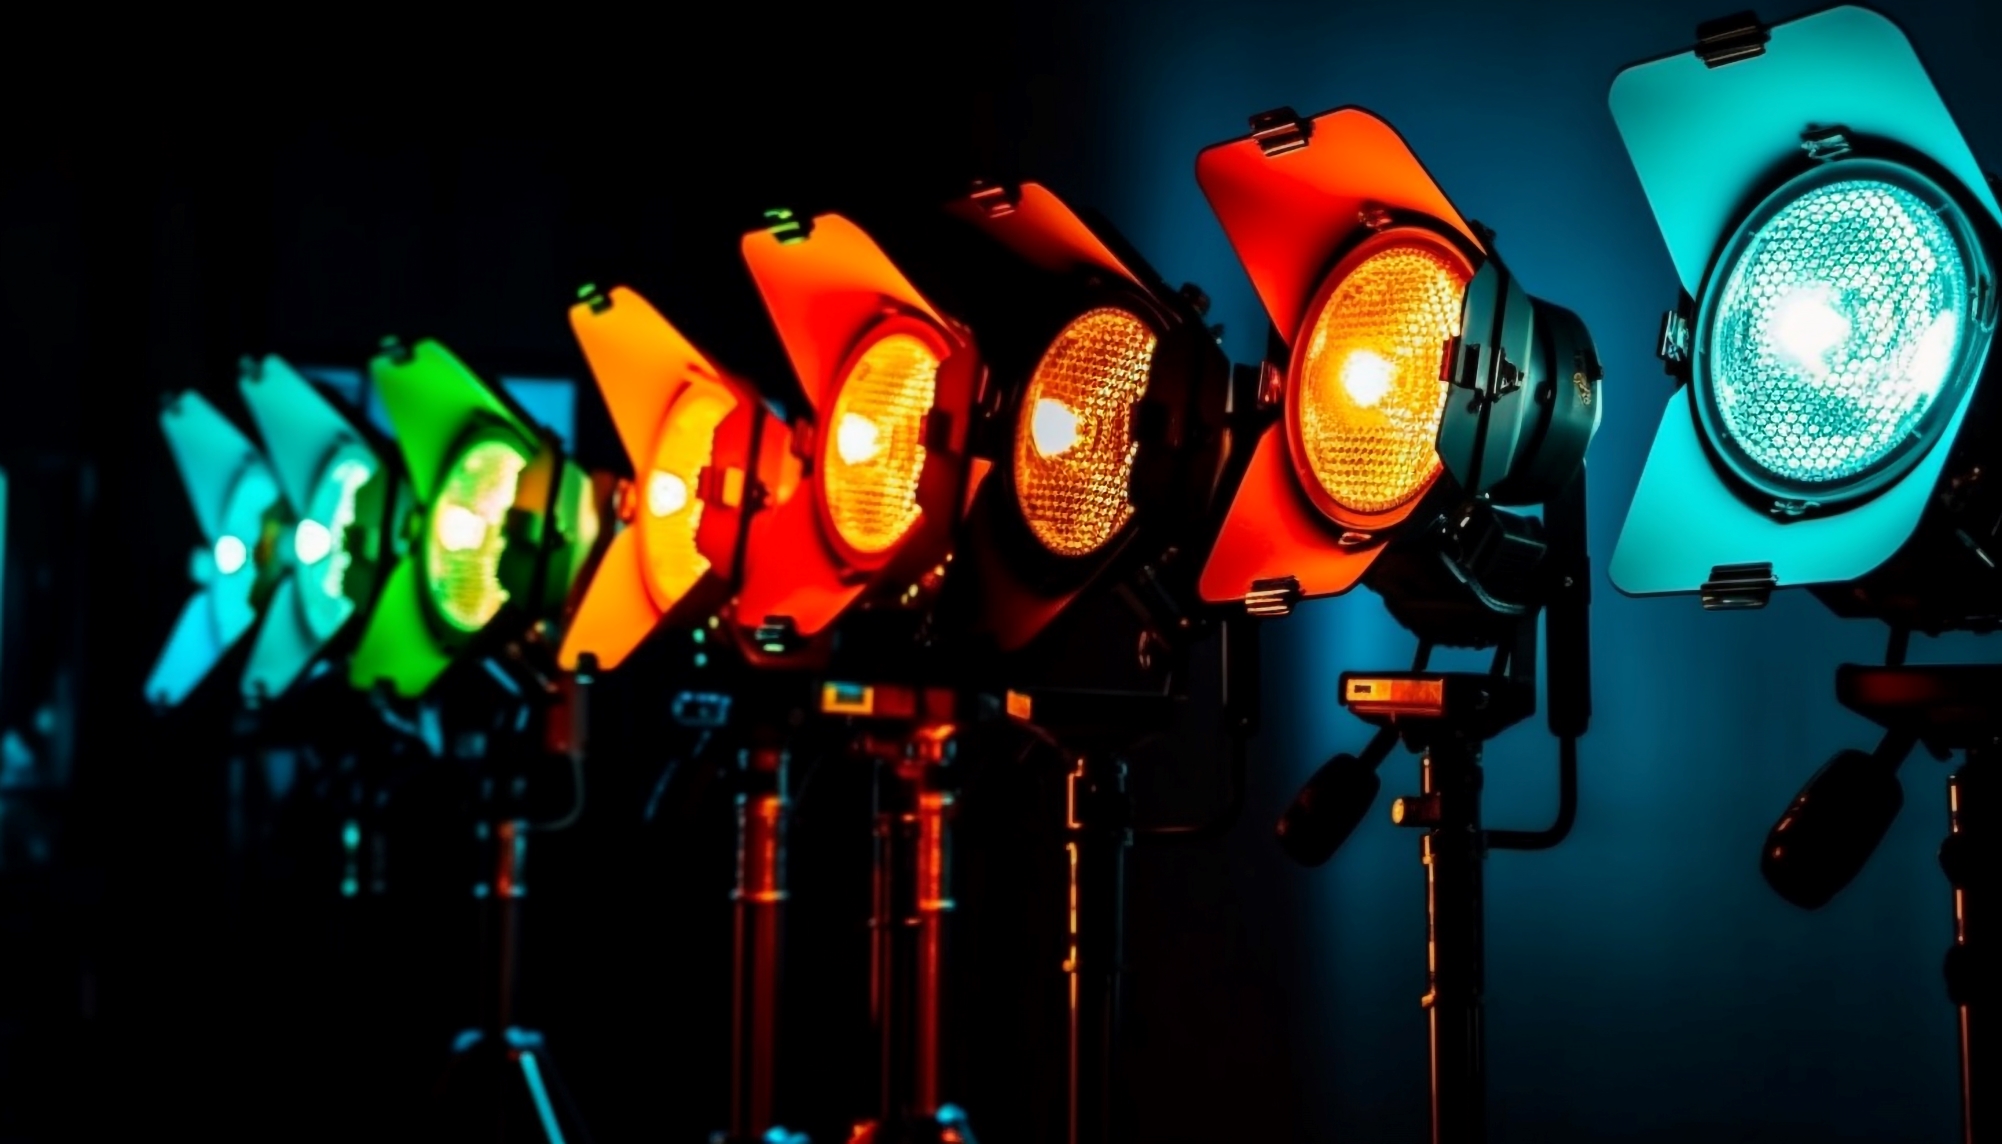 Sfaturi pentru întreținerea eficientă a echipamentelor de iluminat și audio